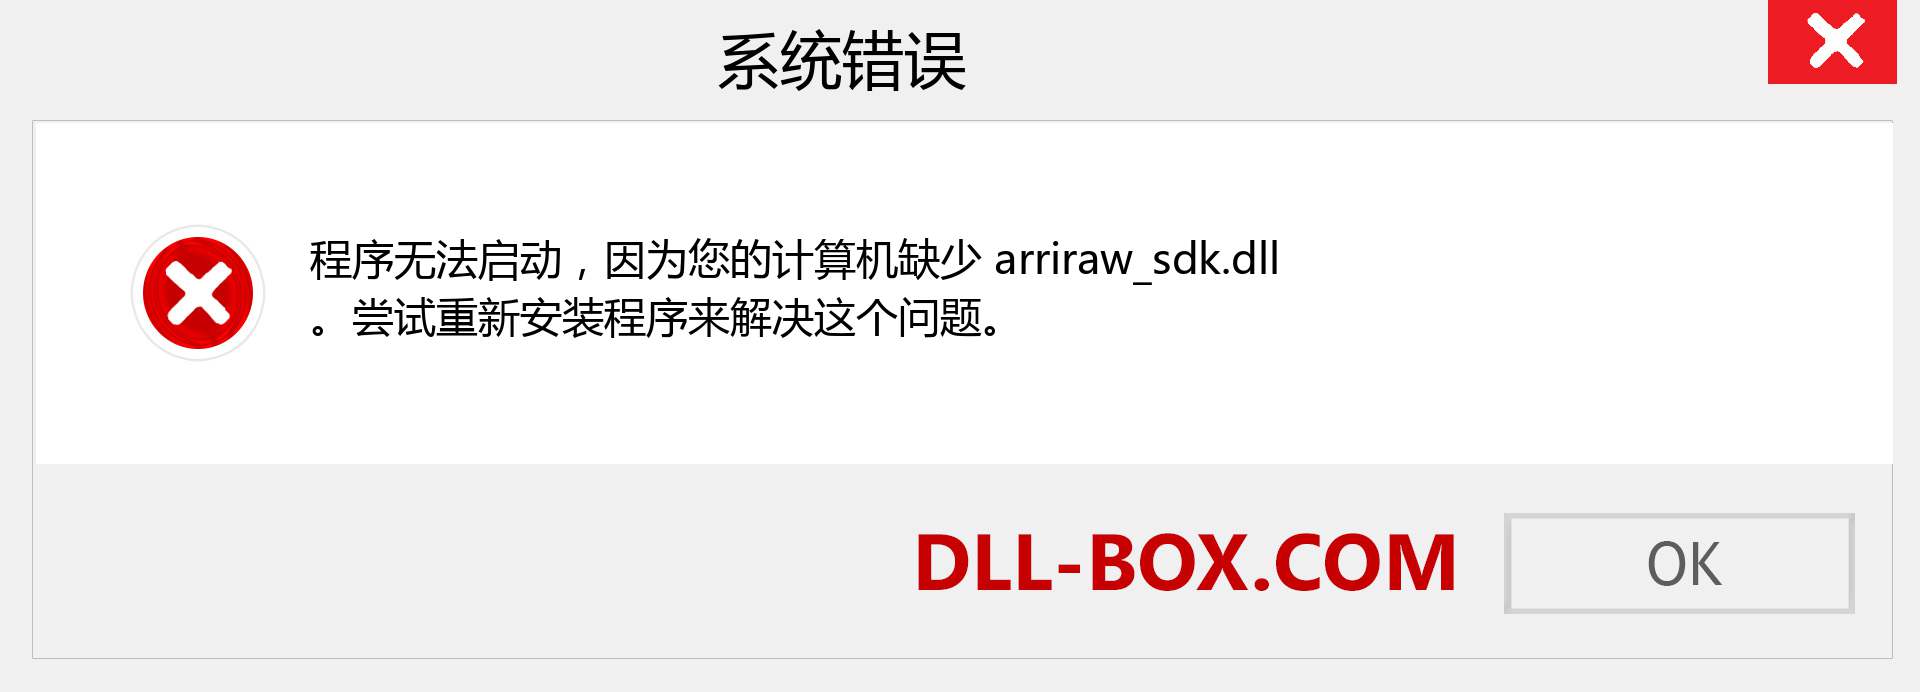 arriraw_sdk.dll 文件丢失？。 适用于 Windows 7、8、10 的下载 - 修复 Windows、照片、图像上的 arriraw_sdk dll 丢失错误